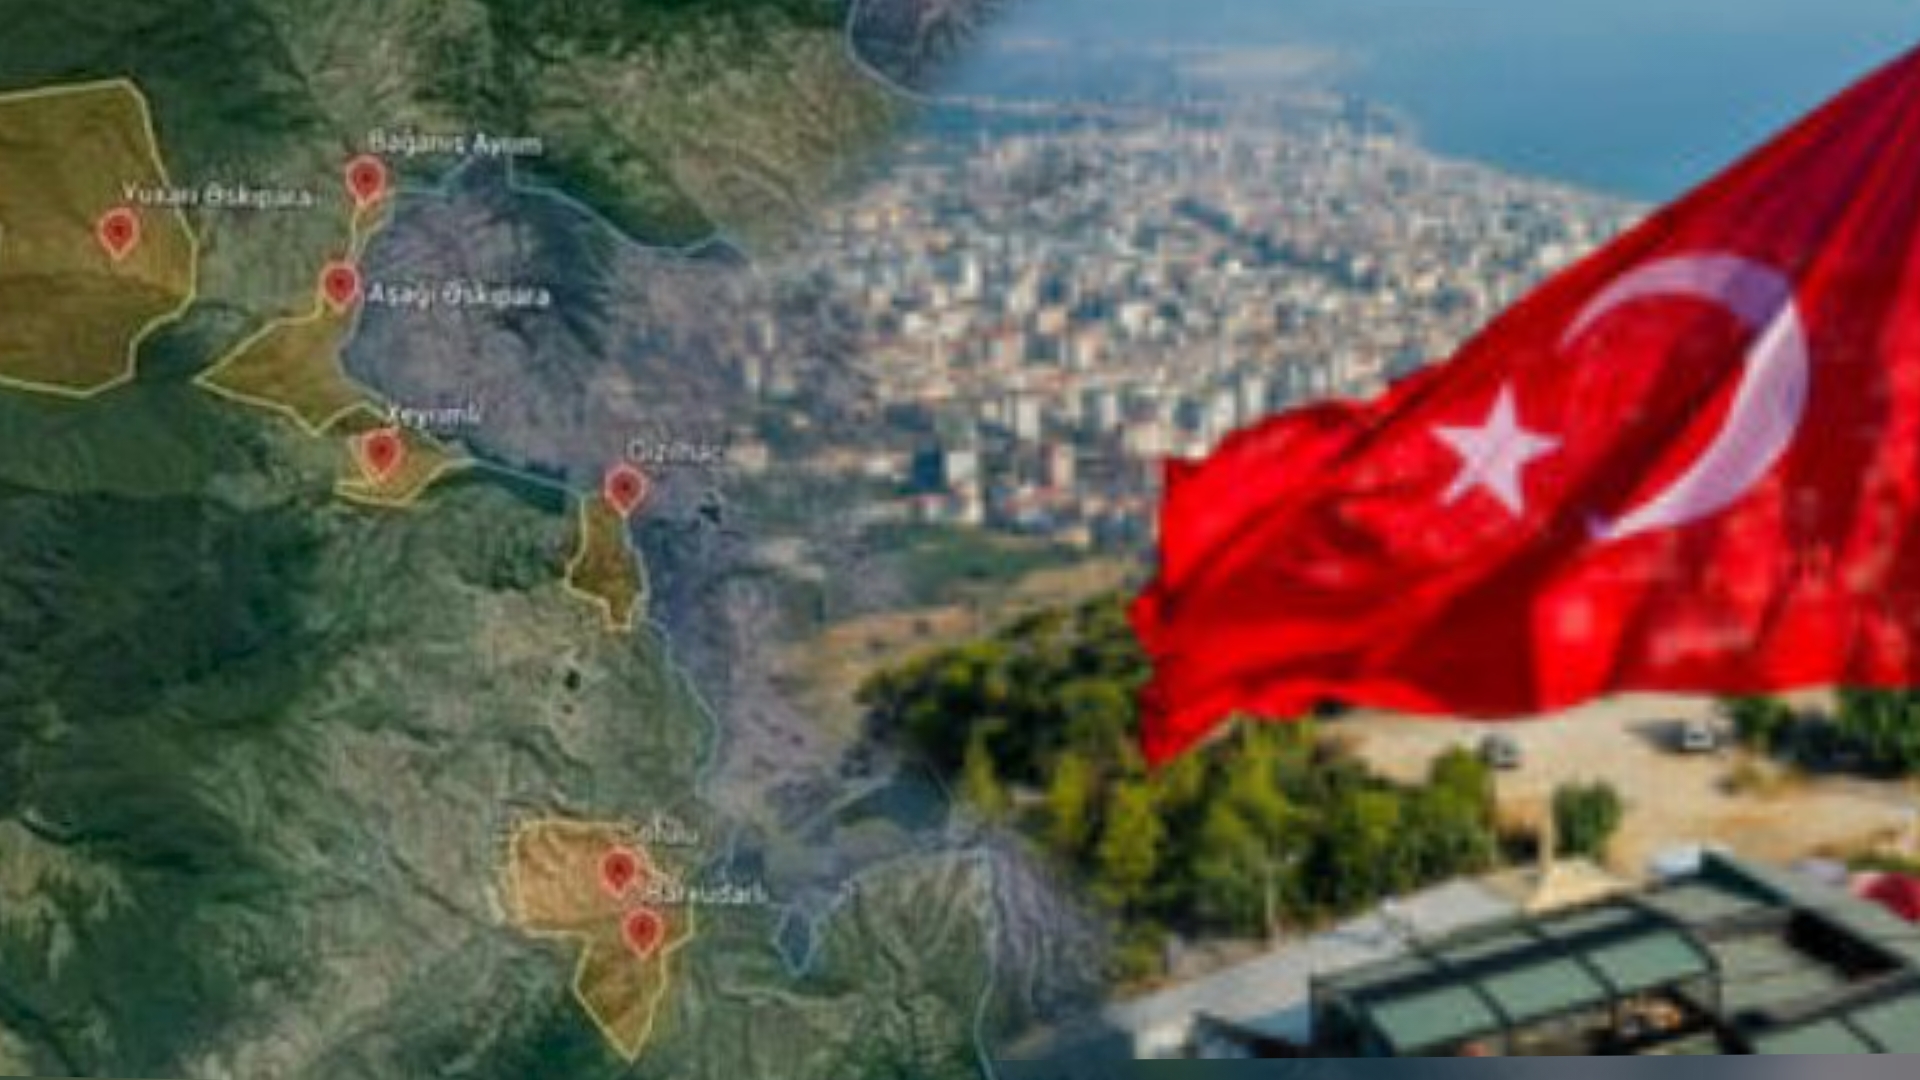 Bakının 8 kəndlə bağlı ehtiyat planı – Türkiyə bəyanat verdi: “Yanınızdayıq”